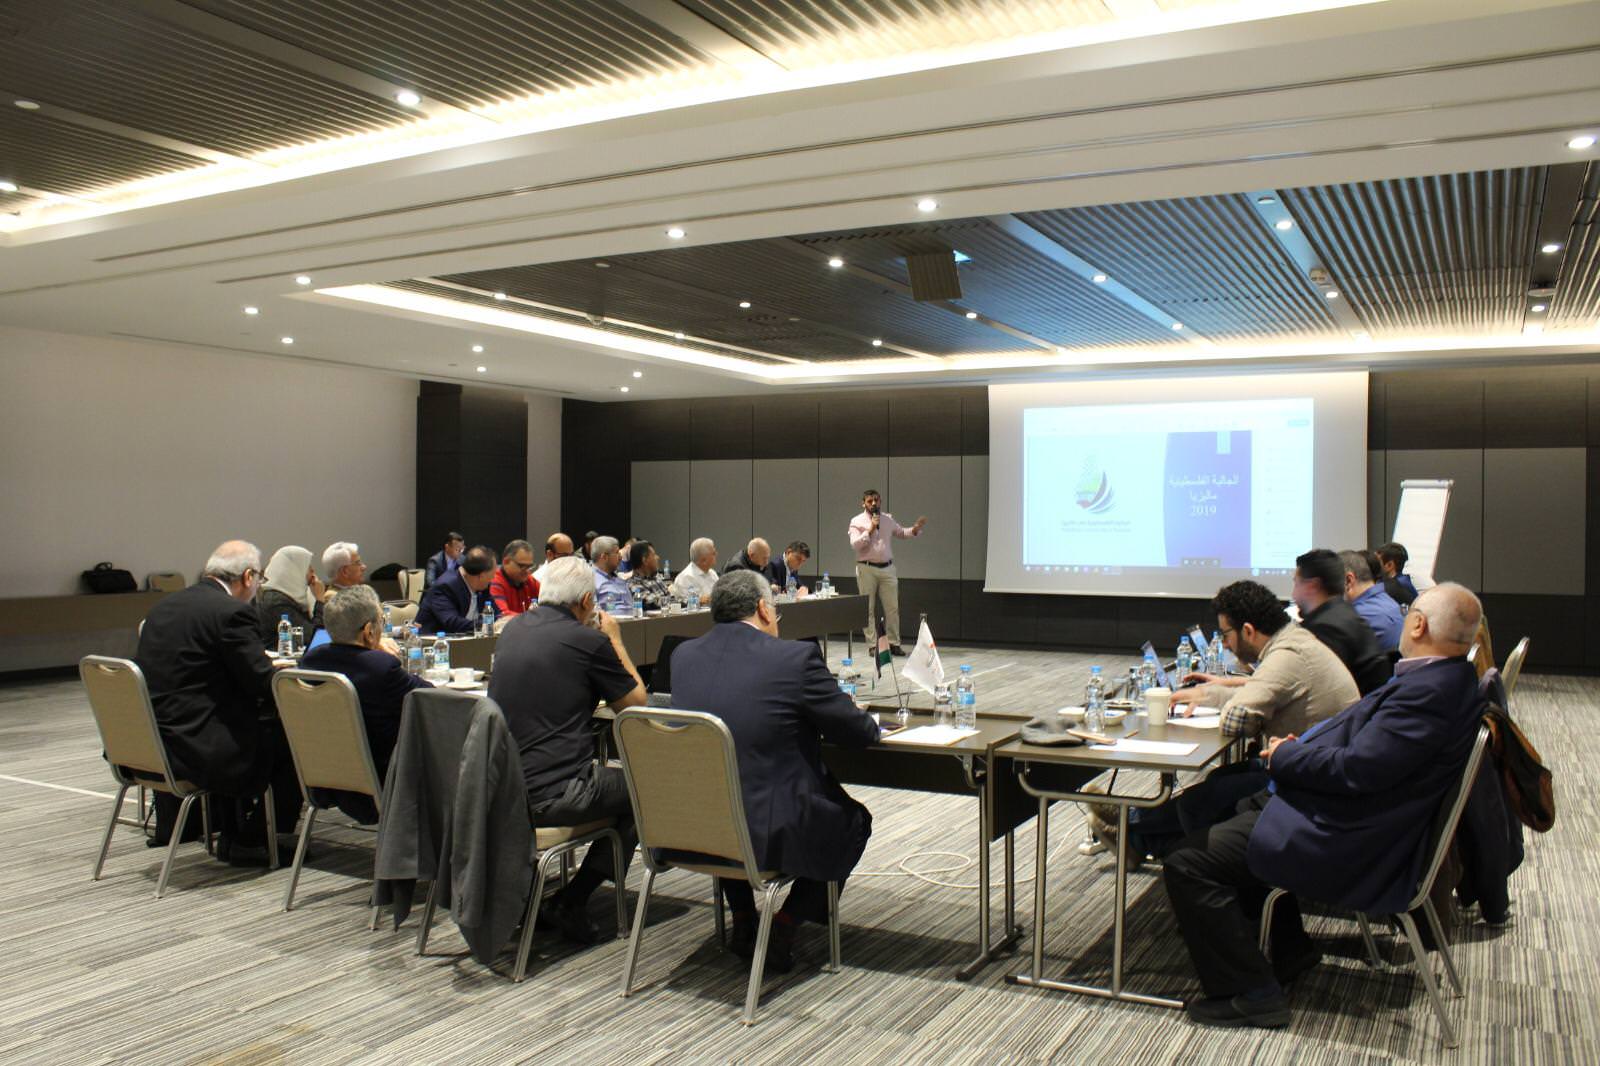 المؤتمر الشعبي لفلسطينيي الخارج يعقد في اسطنبول الاجتماع الأول لمنسقياته حول العالم